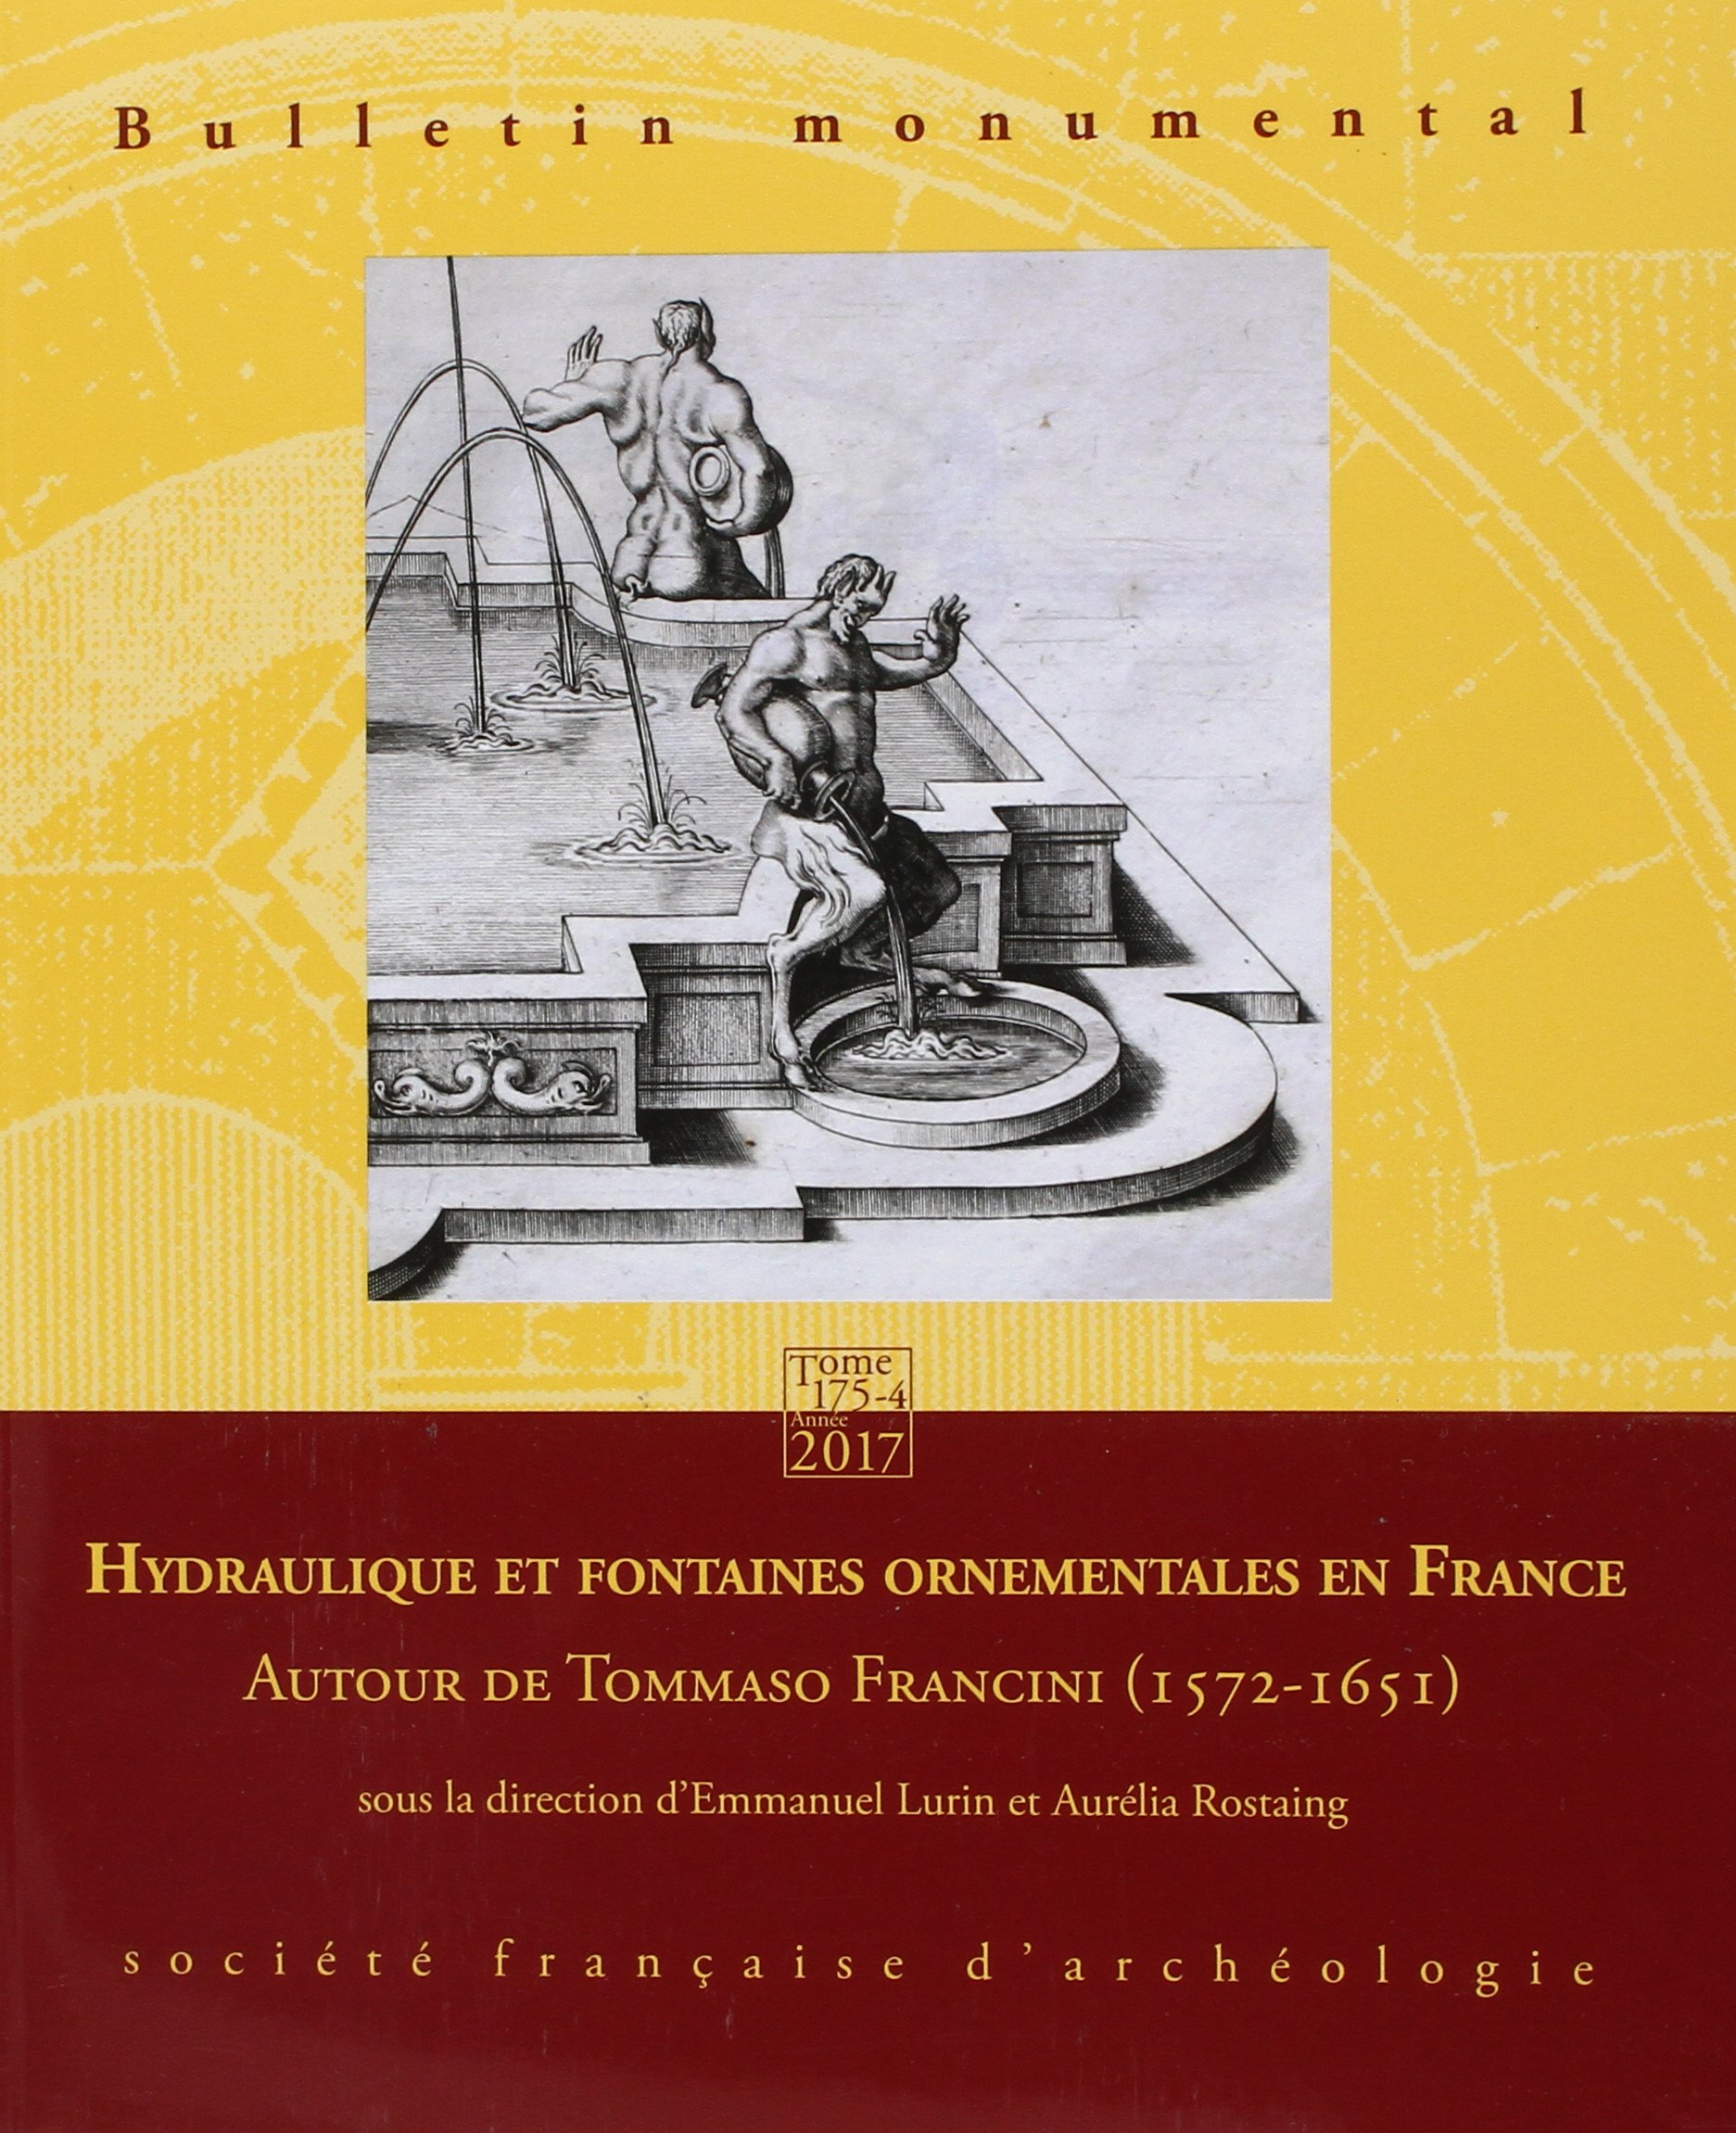 175-4, 2017. Hydraulique et fontaines ornementales en France. Autour de Tommaso Francini (1572-1651)